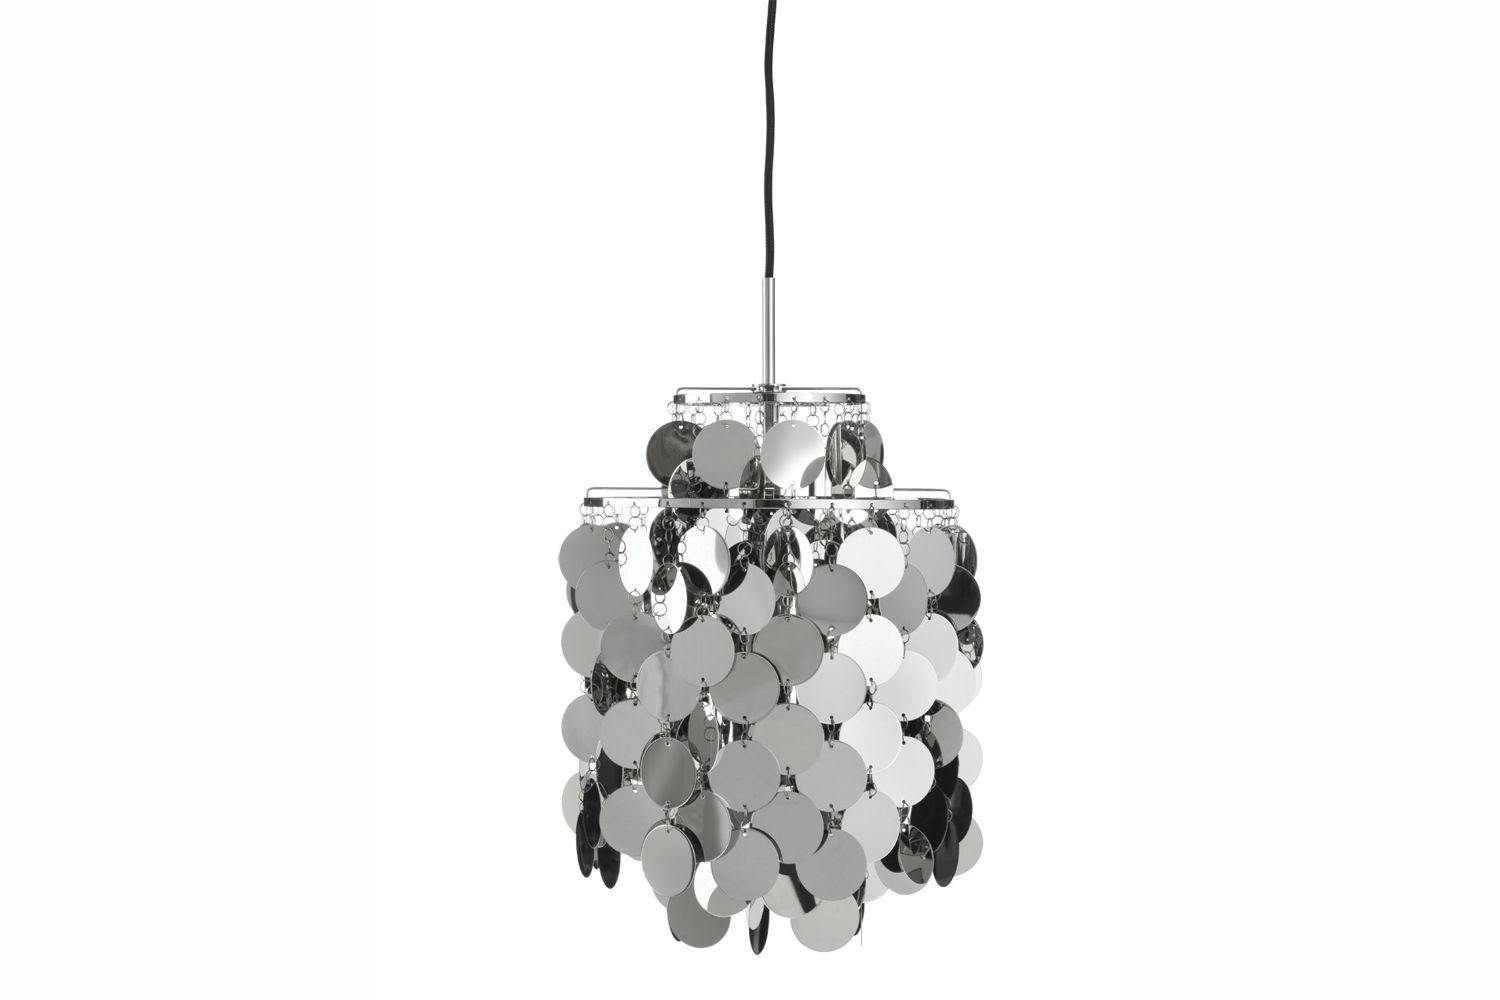 Fun Metal Small Pendant Lamp by Verner Panton for Verpan ... - 1500 x 1000 jpeg 38kB